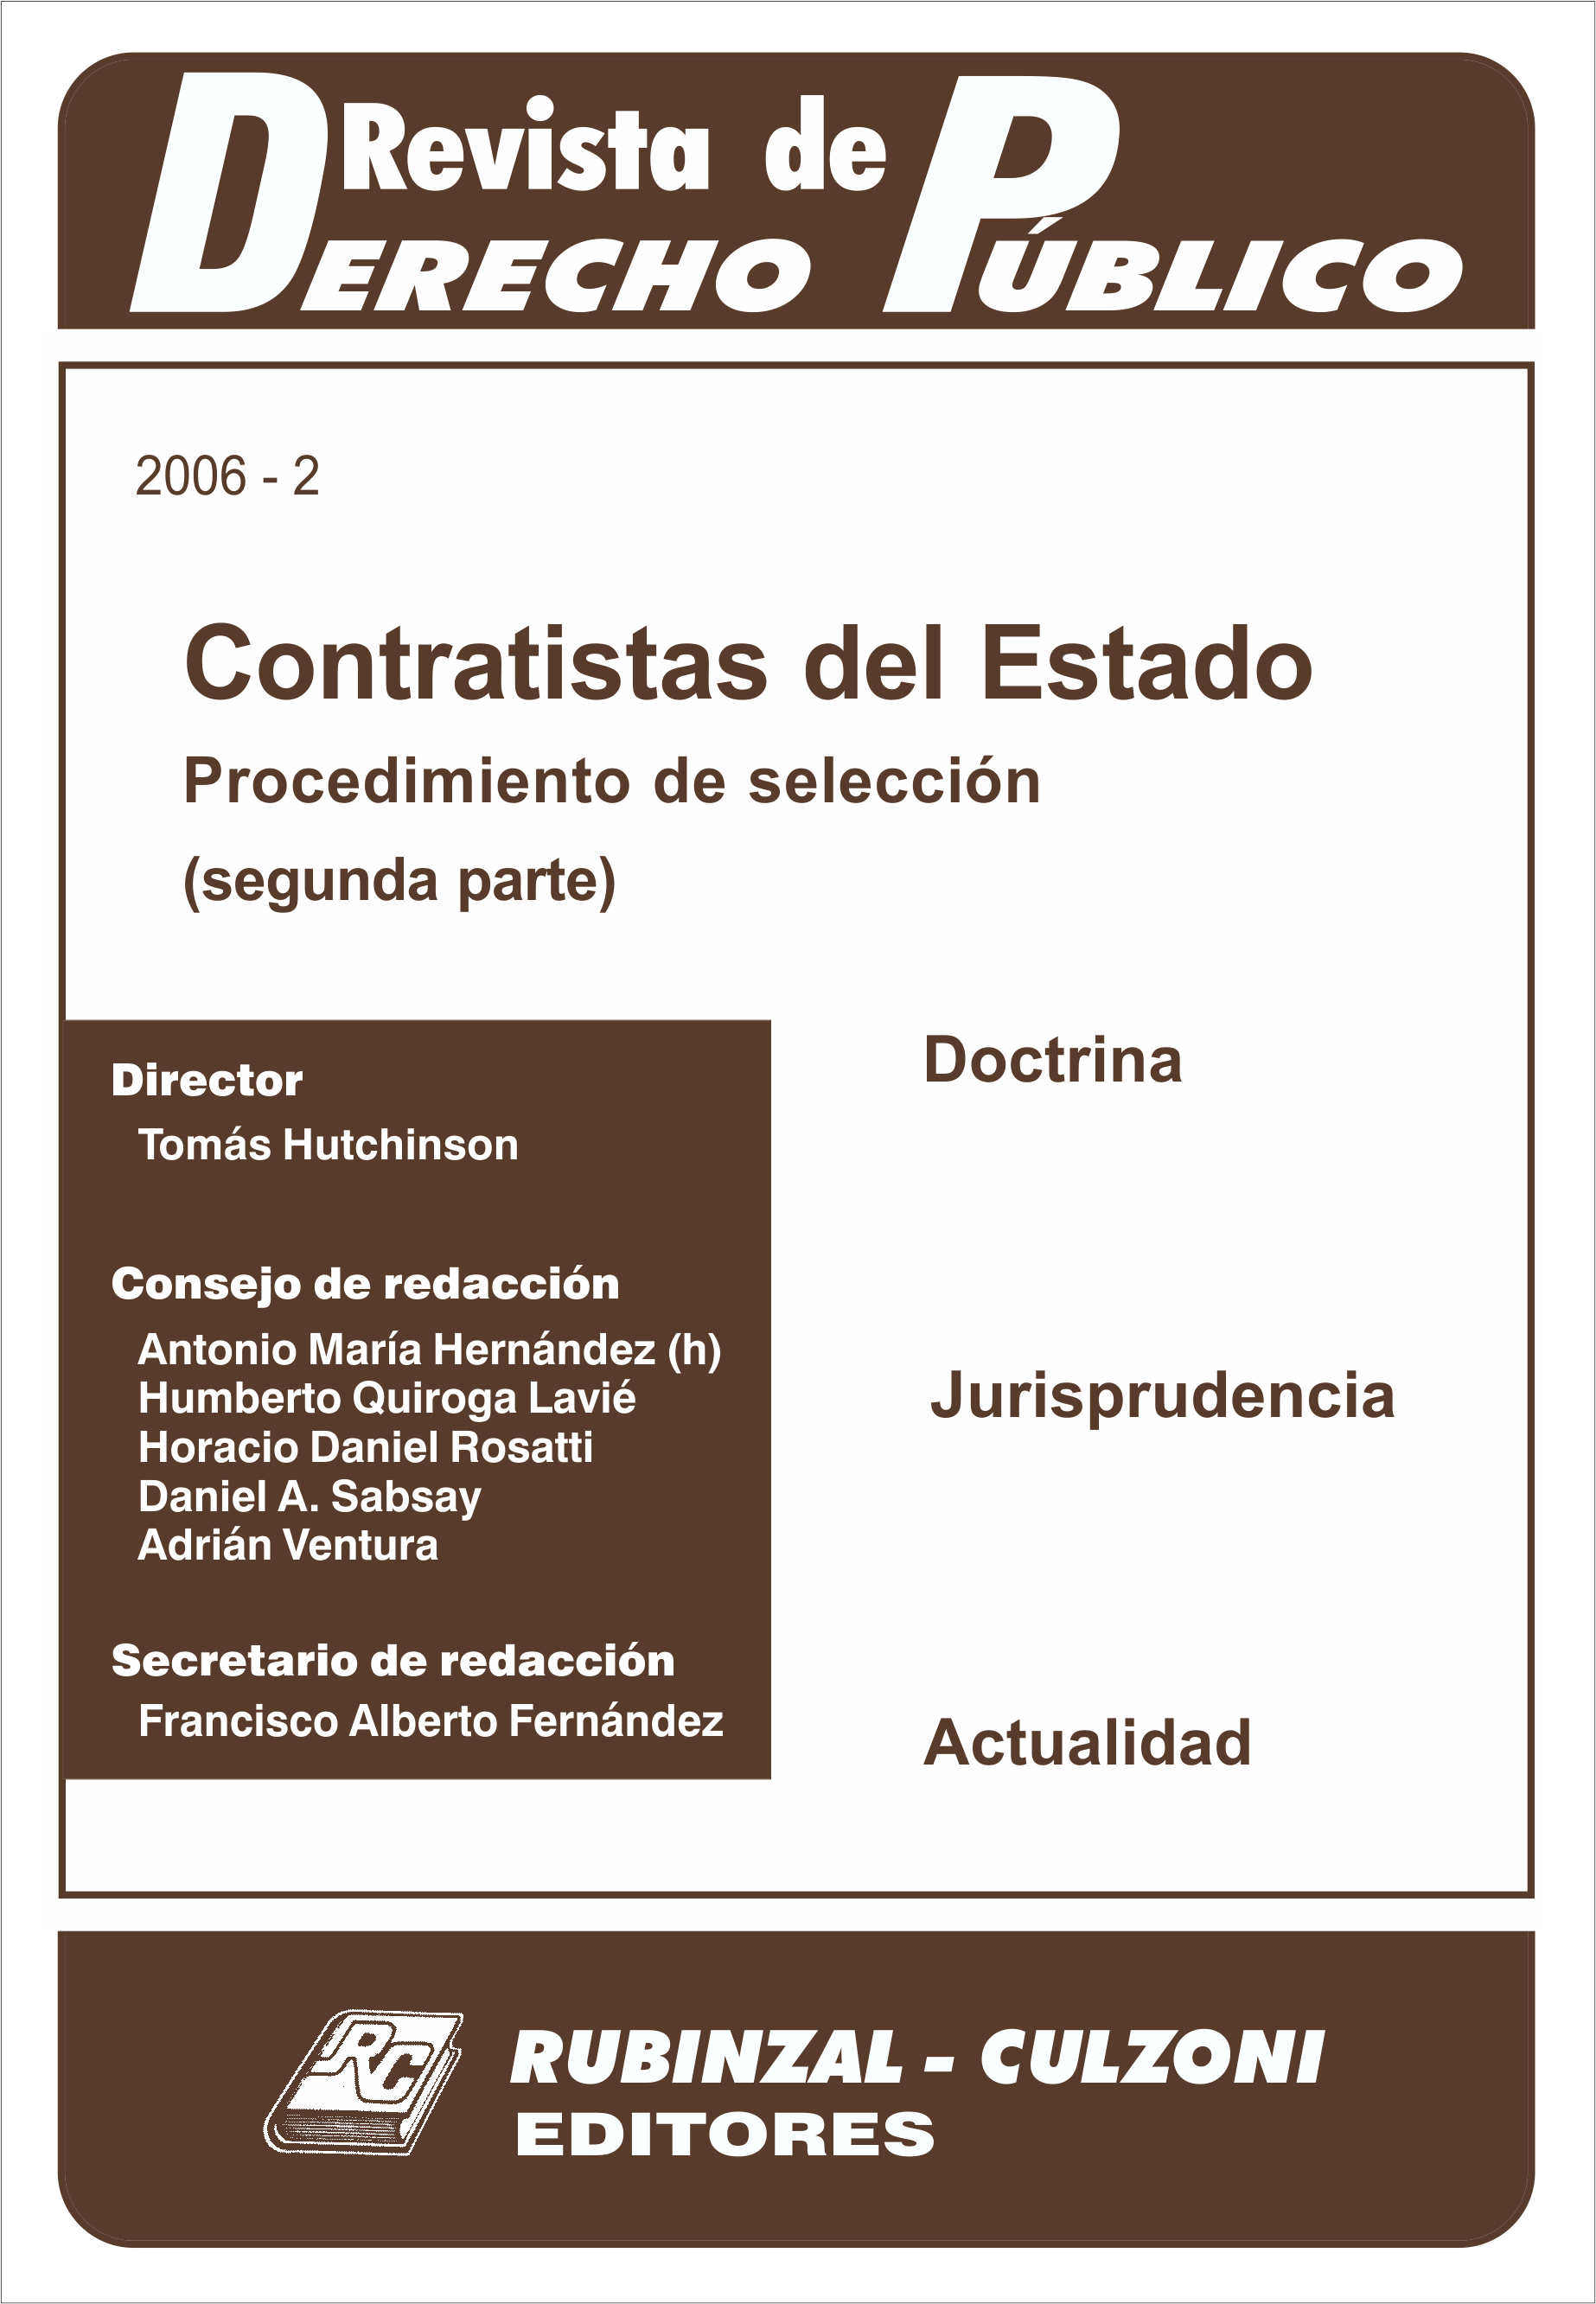 Revista de Derecho Público - Contratistas del Estado